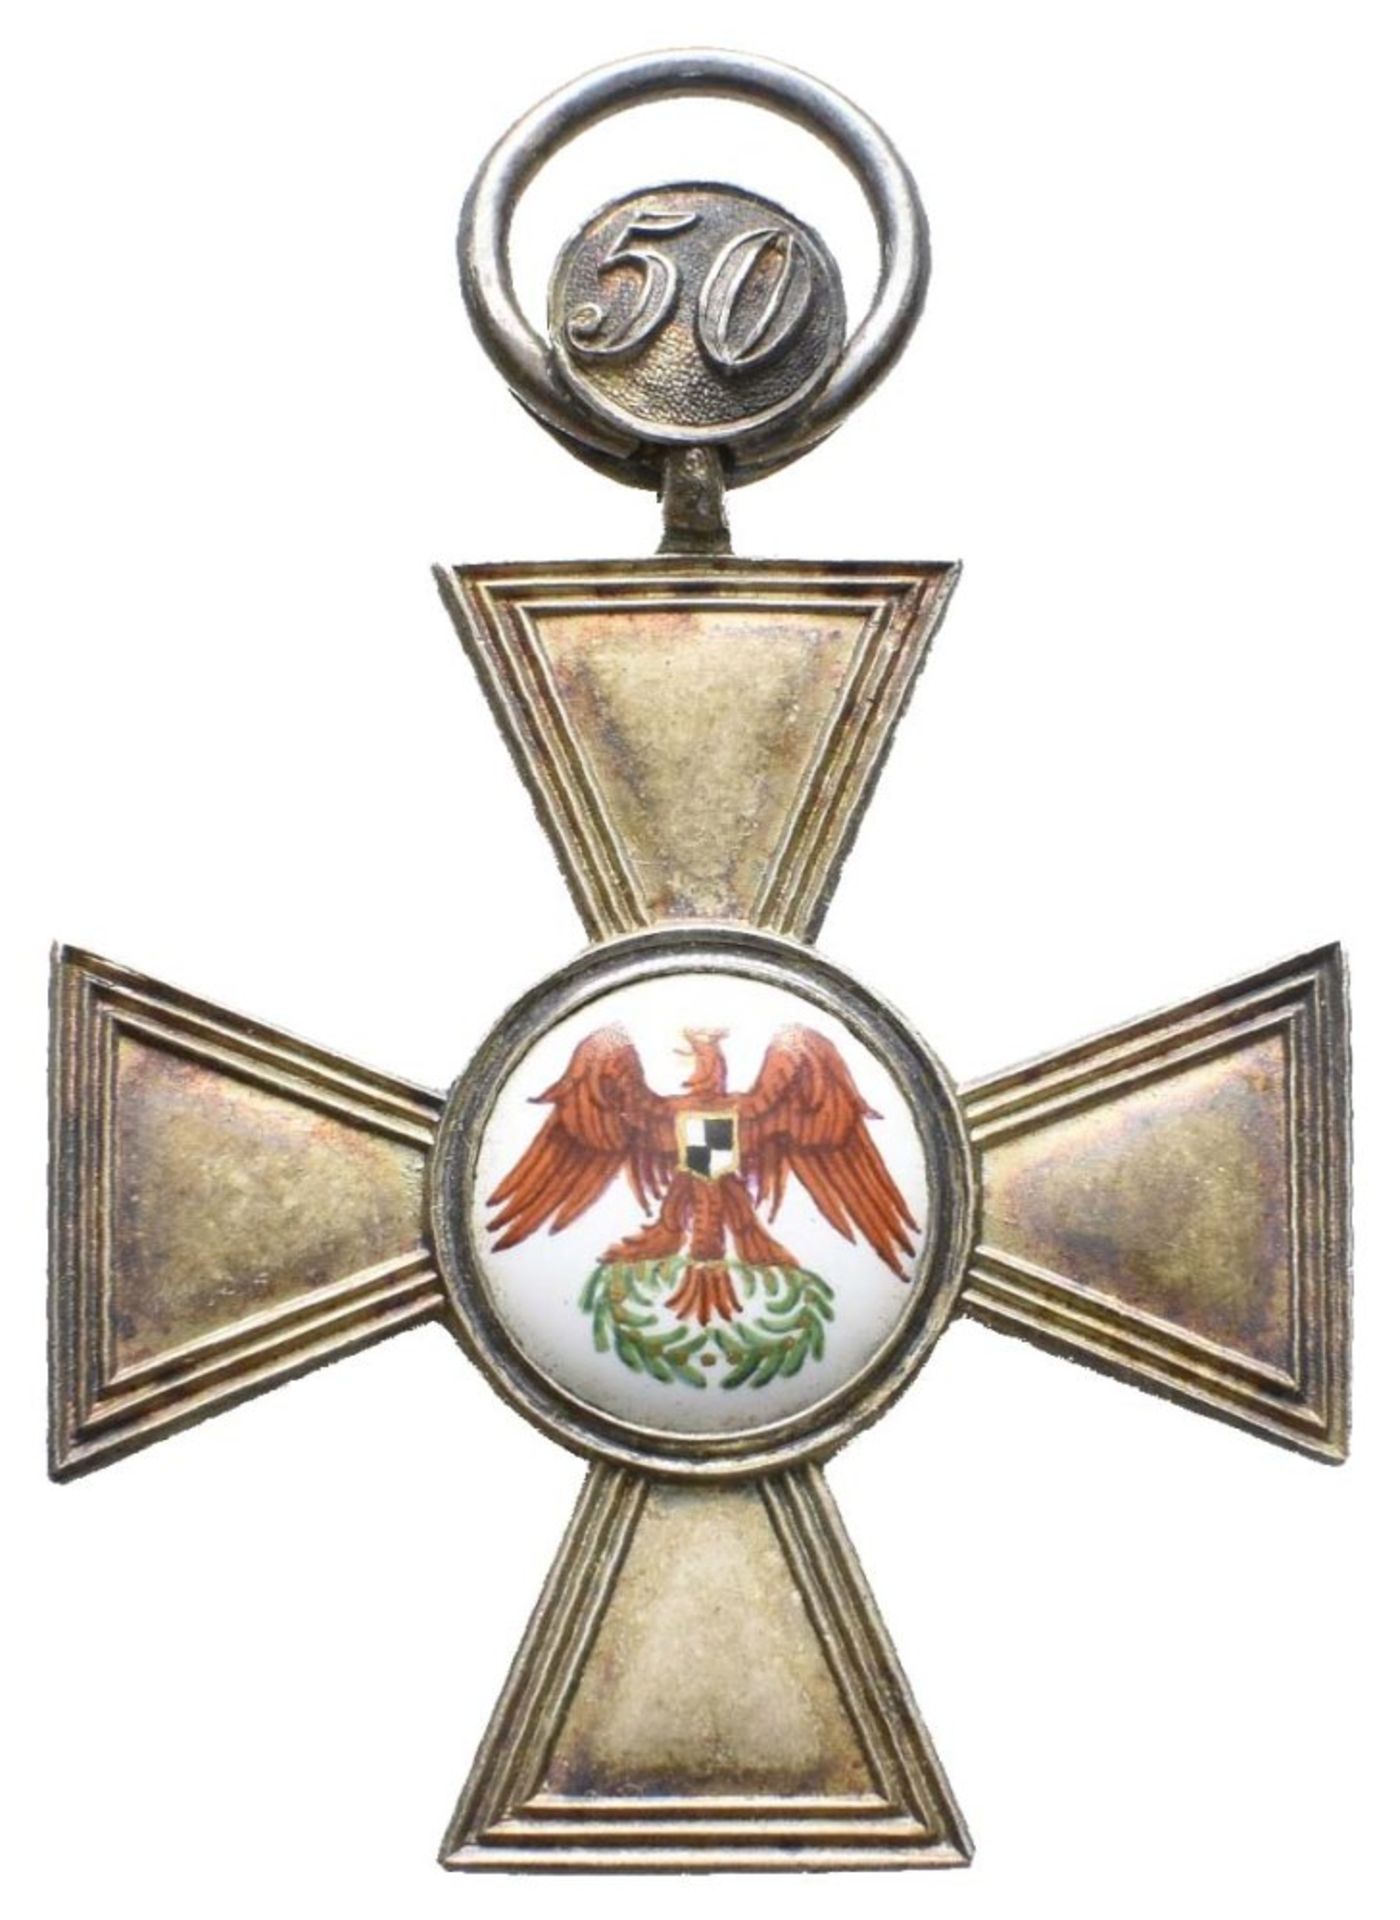 Preußen, Roter Adler Orden, Kreuz 4. Klasse, Silber, glatte Arme, mit Jubiläumszahl 50, OEK 1702, - Bild 2 aus 4